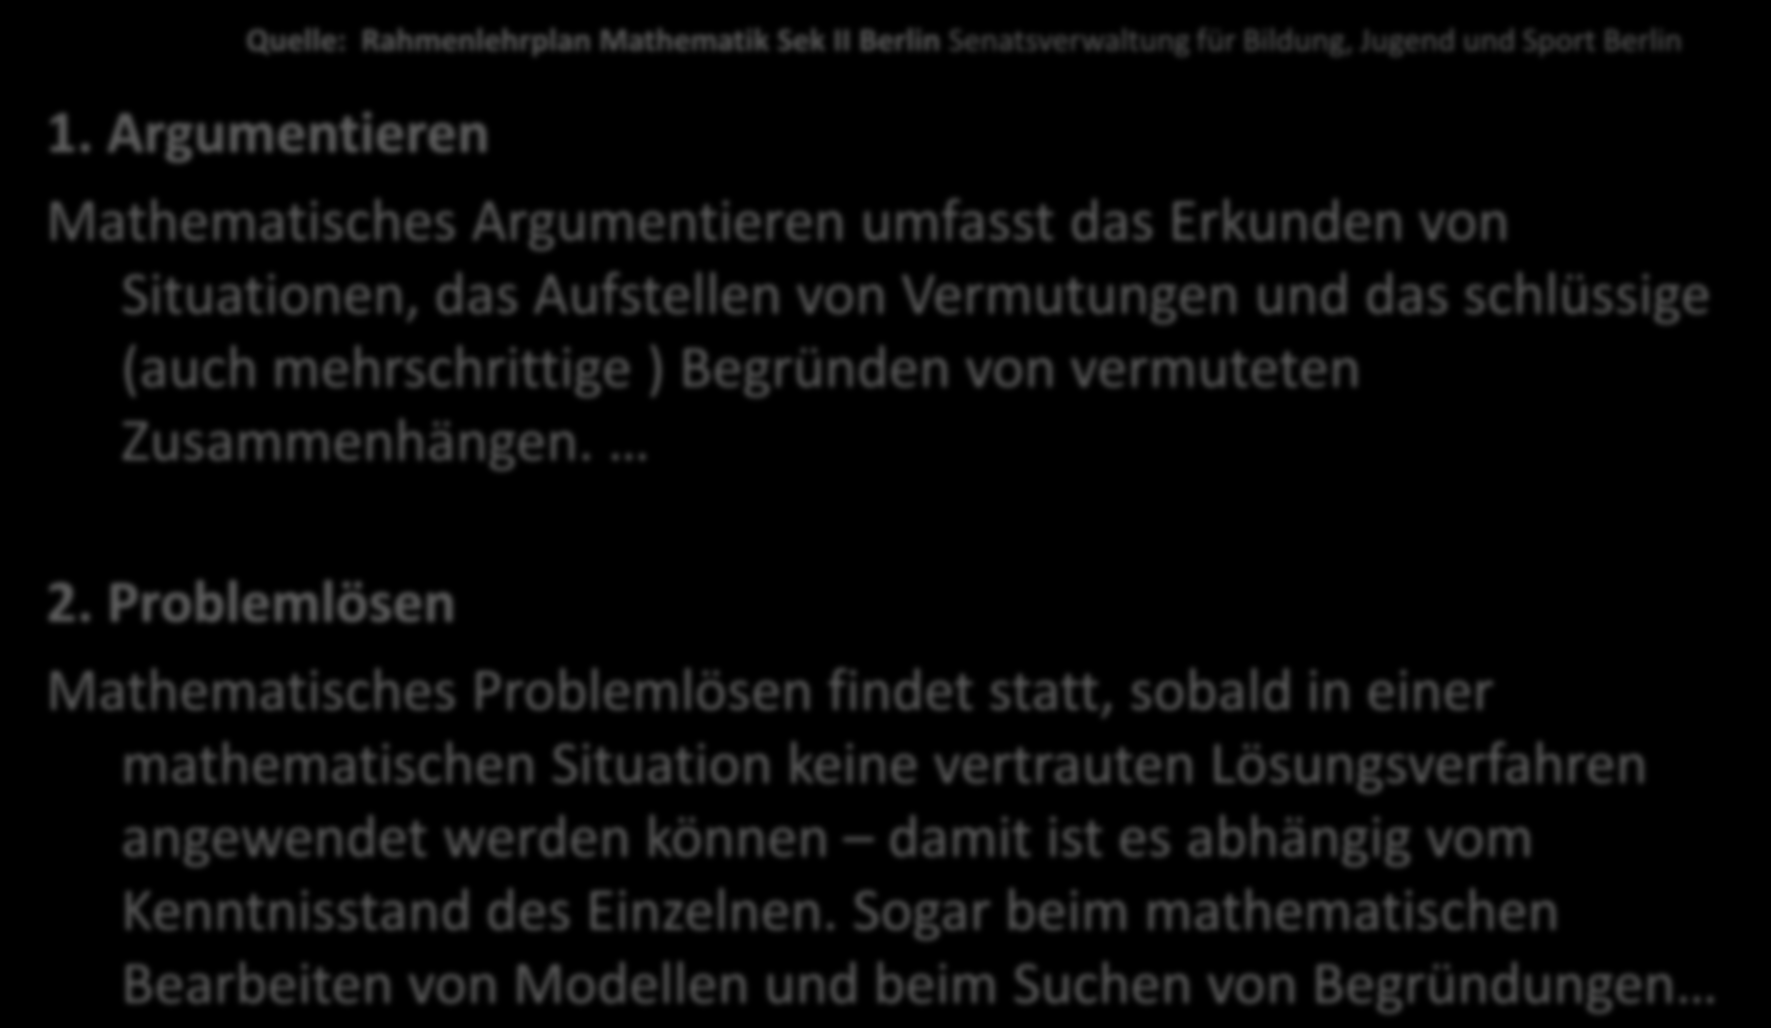 Quelle: Rahmenlehrplan Mathematik Sek II Berlin Senatsverwaltung für Bildung, Jugend und Sport Berlin 1.